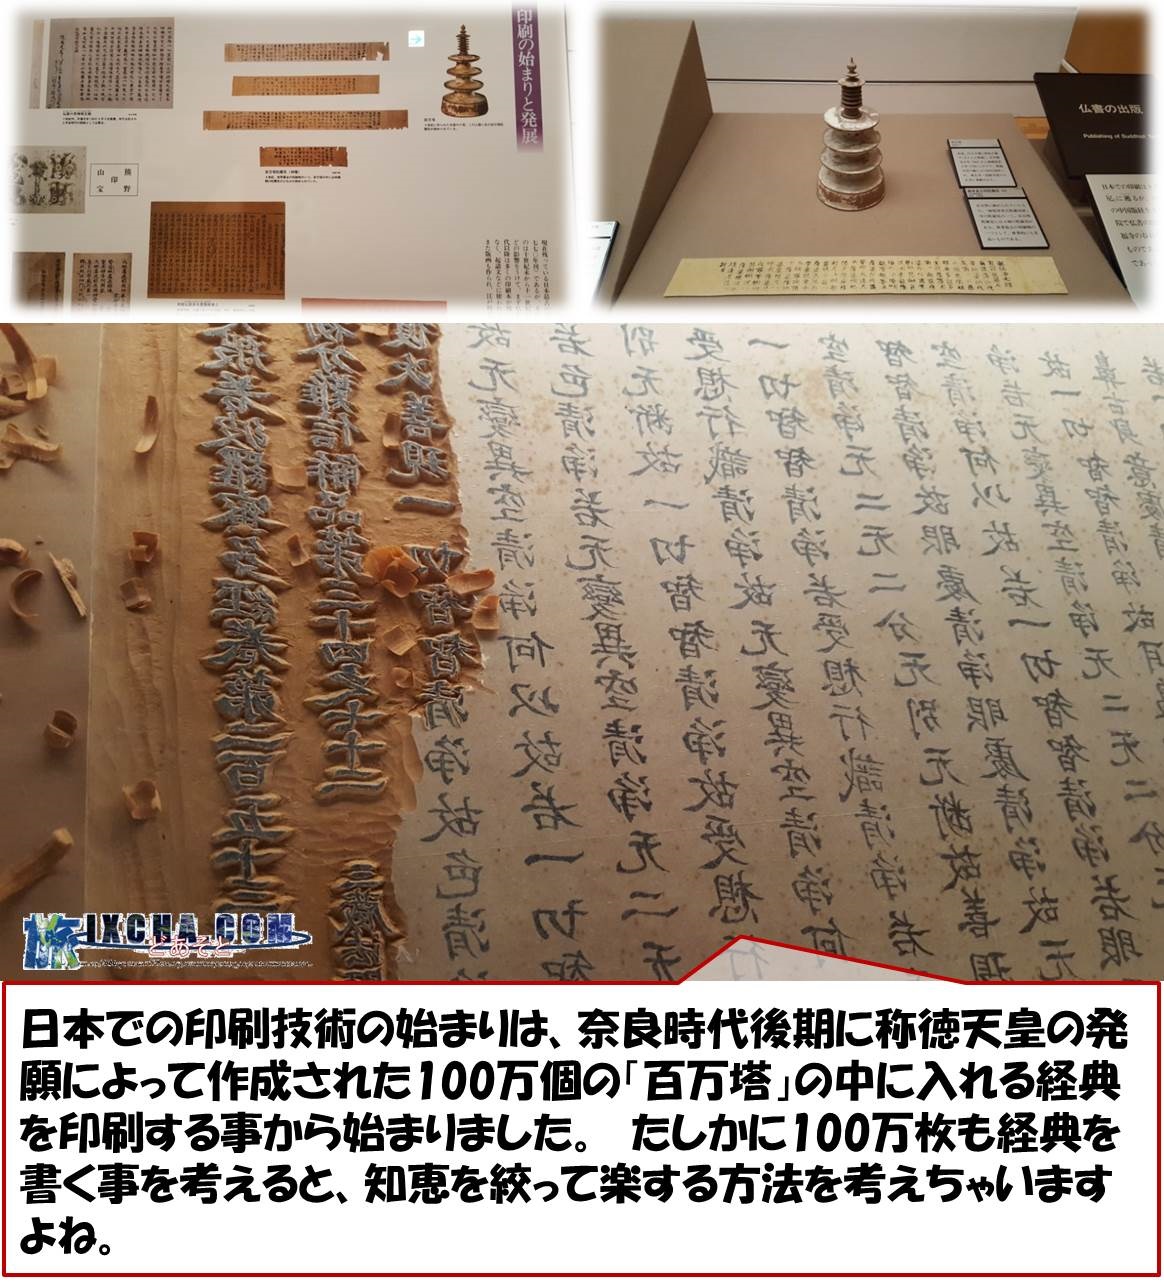 日本での印刷技術の始まりは、奈良時代後期に称徳天皇の発願によって作成された100万個の「百万塔」の中に入れる経典を印刷する事から始まりました。　たしかに100万枚も経典を書く事を考えると、知恵を絞って楽する方法を考えちゃいますよね。